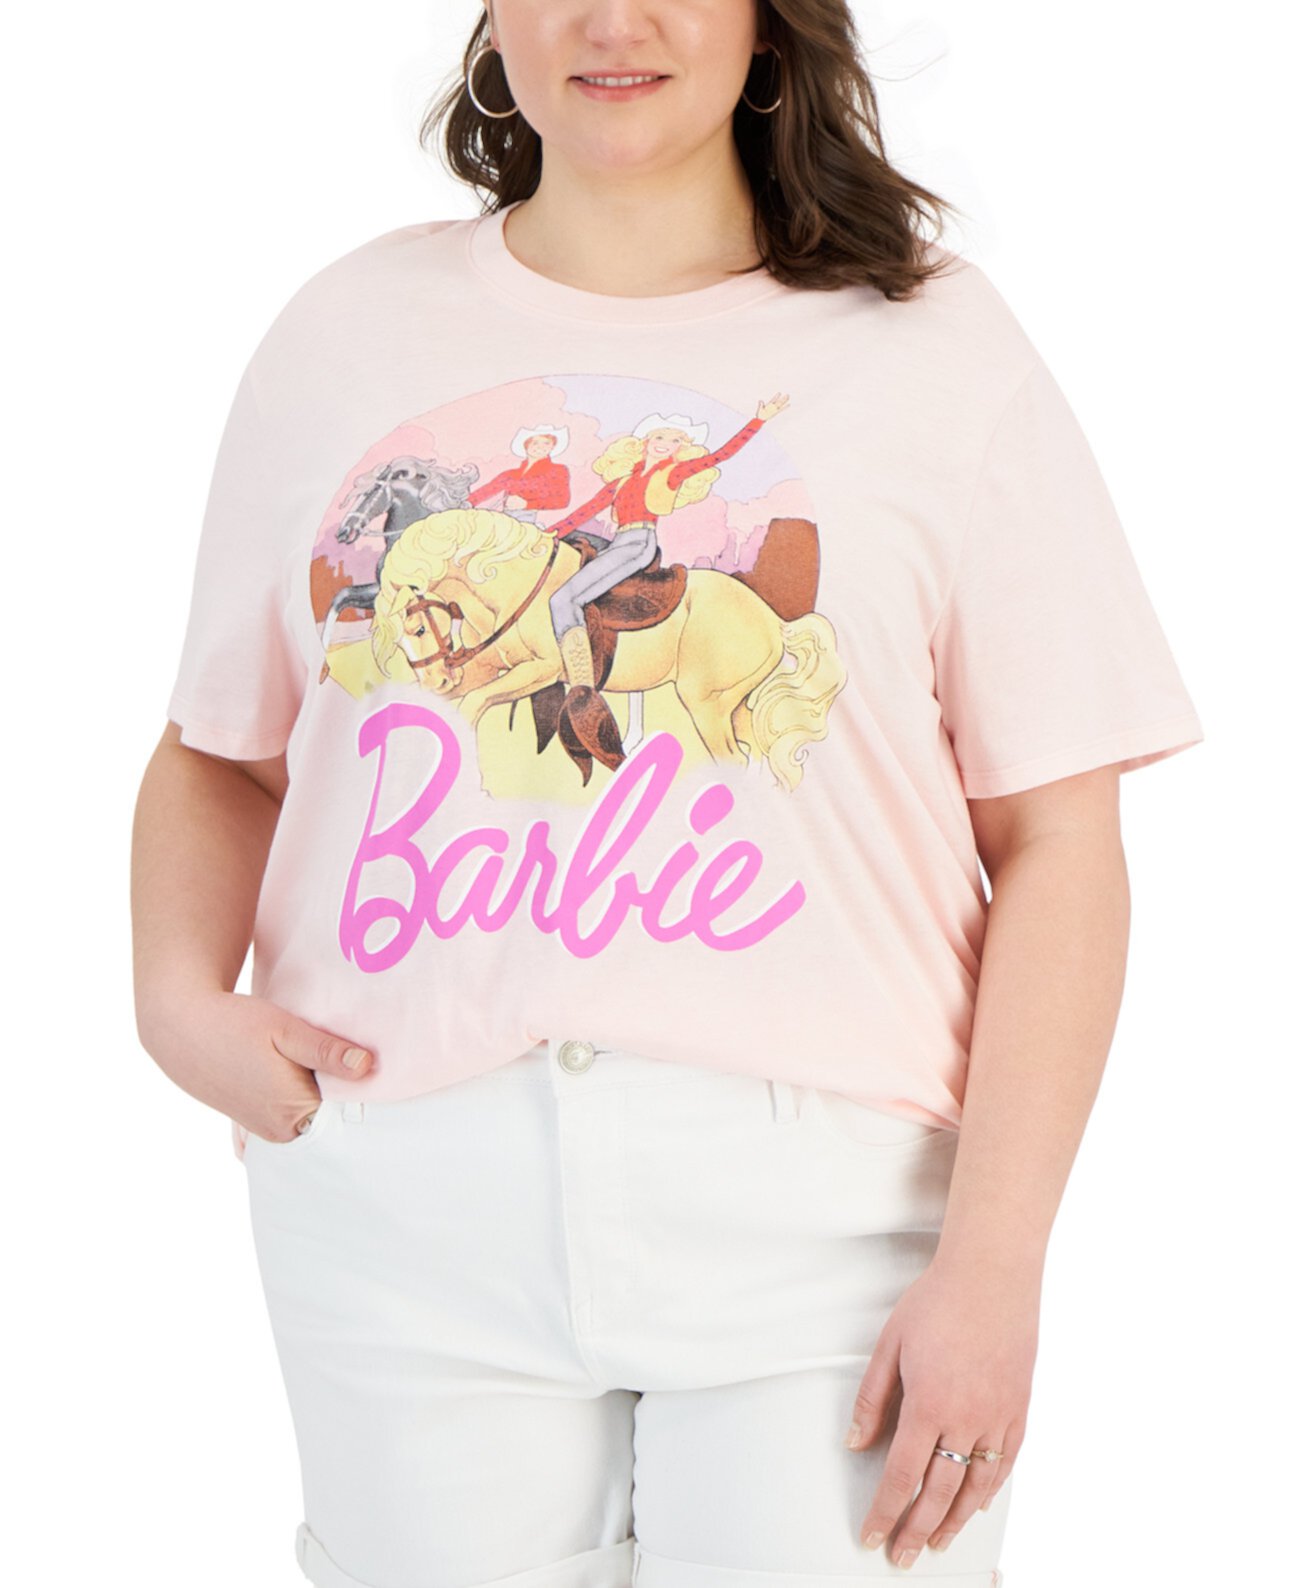 Модная футболка с рисунком Барби в стиле вестерн больших размеров Love Tribe